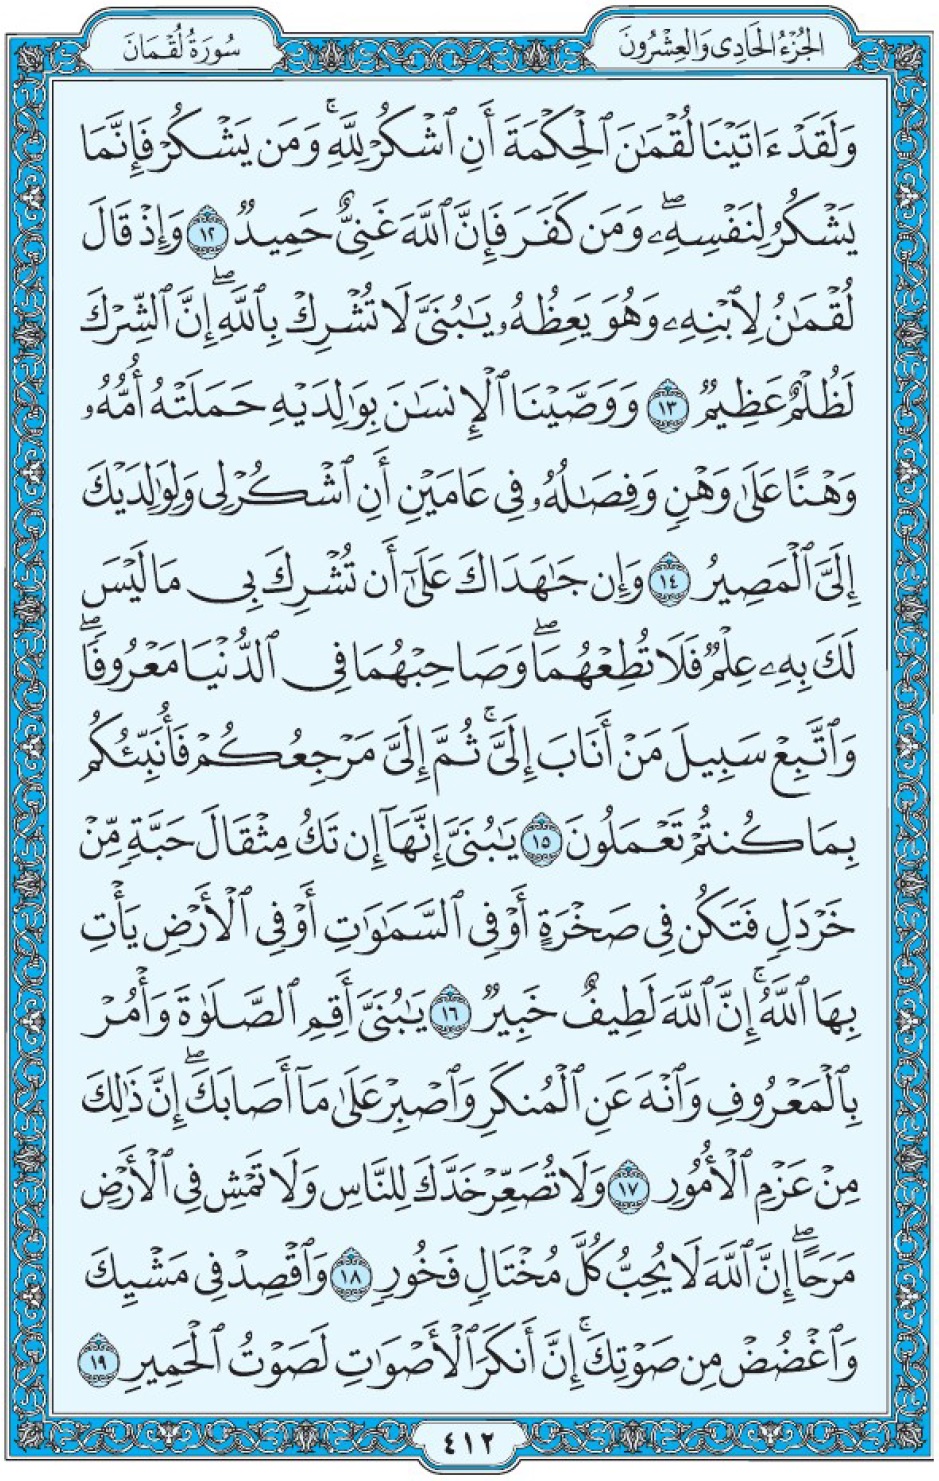 Коран Мединский мусхаф страница 412, Люкман, аят 12-19